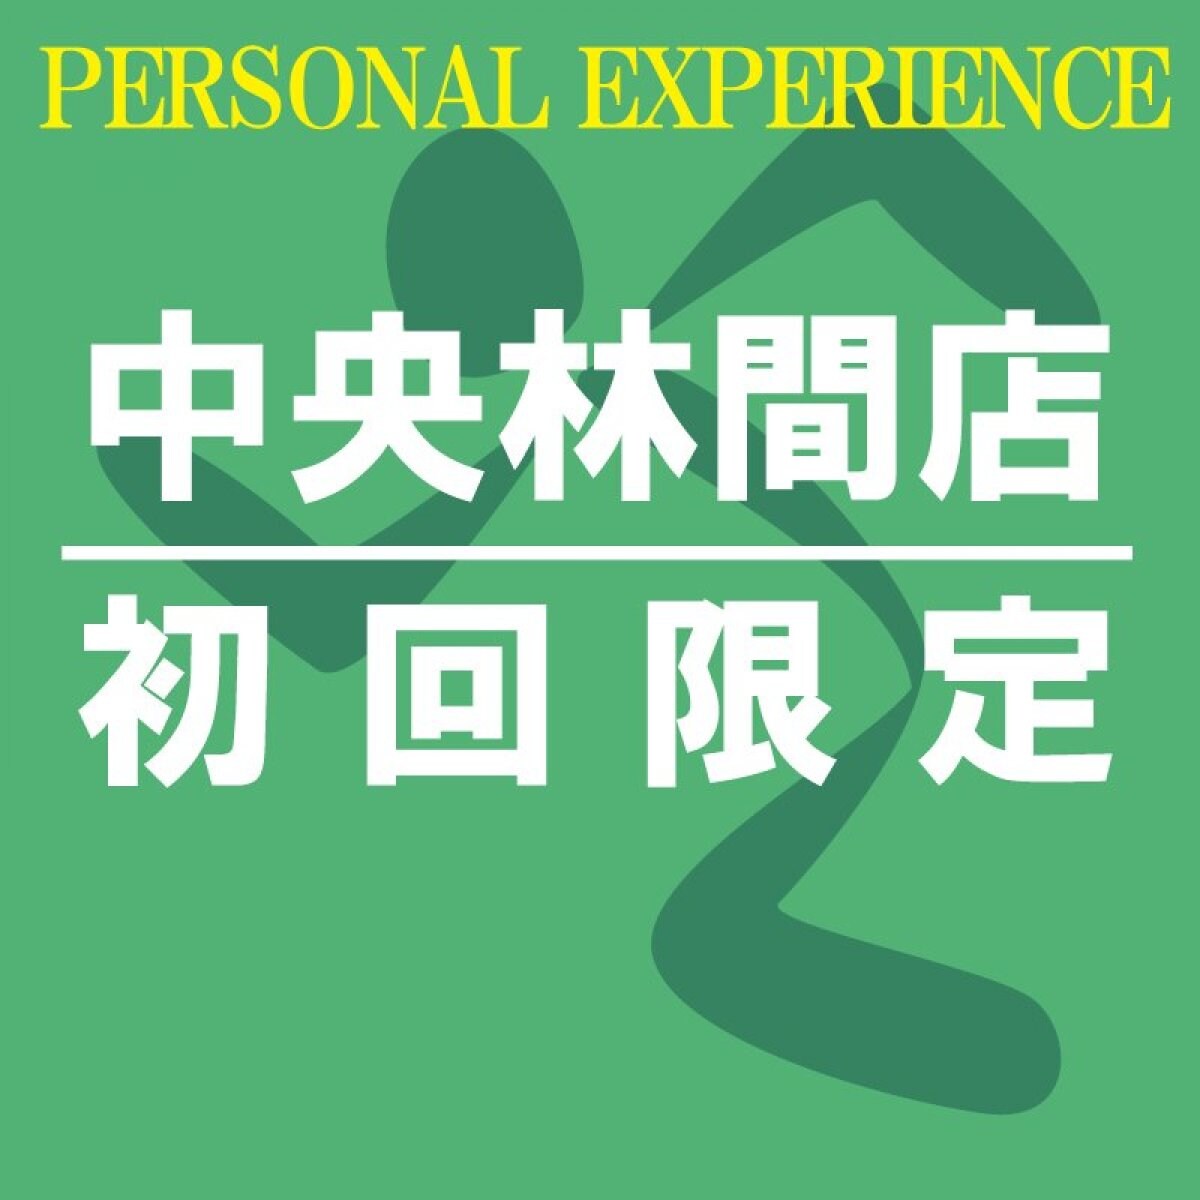 [初回限定]パーソナルトレーニング60分1回チケット[エニタイムフィットネス中央林間店限定]〜Personal Experience[Limited to AF Chuorinkan]